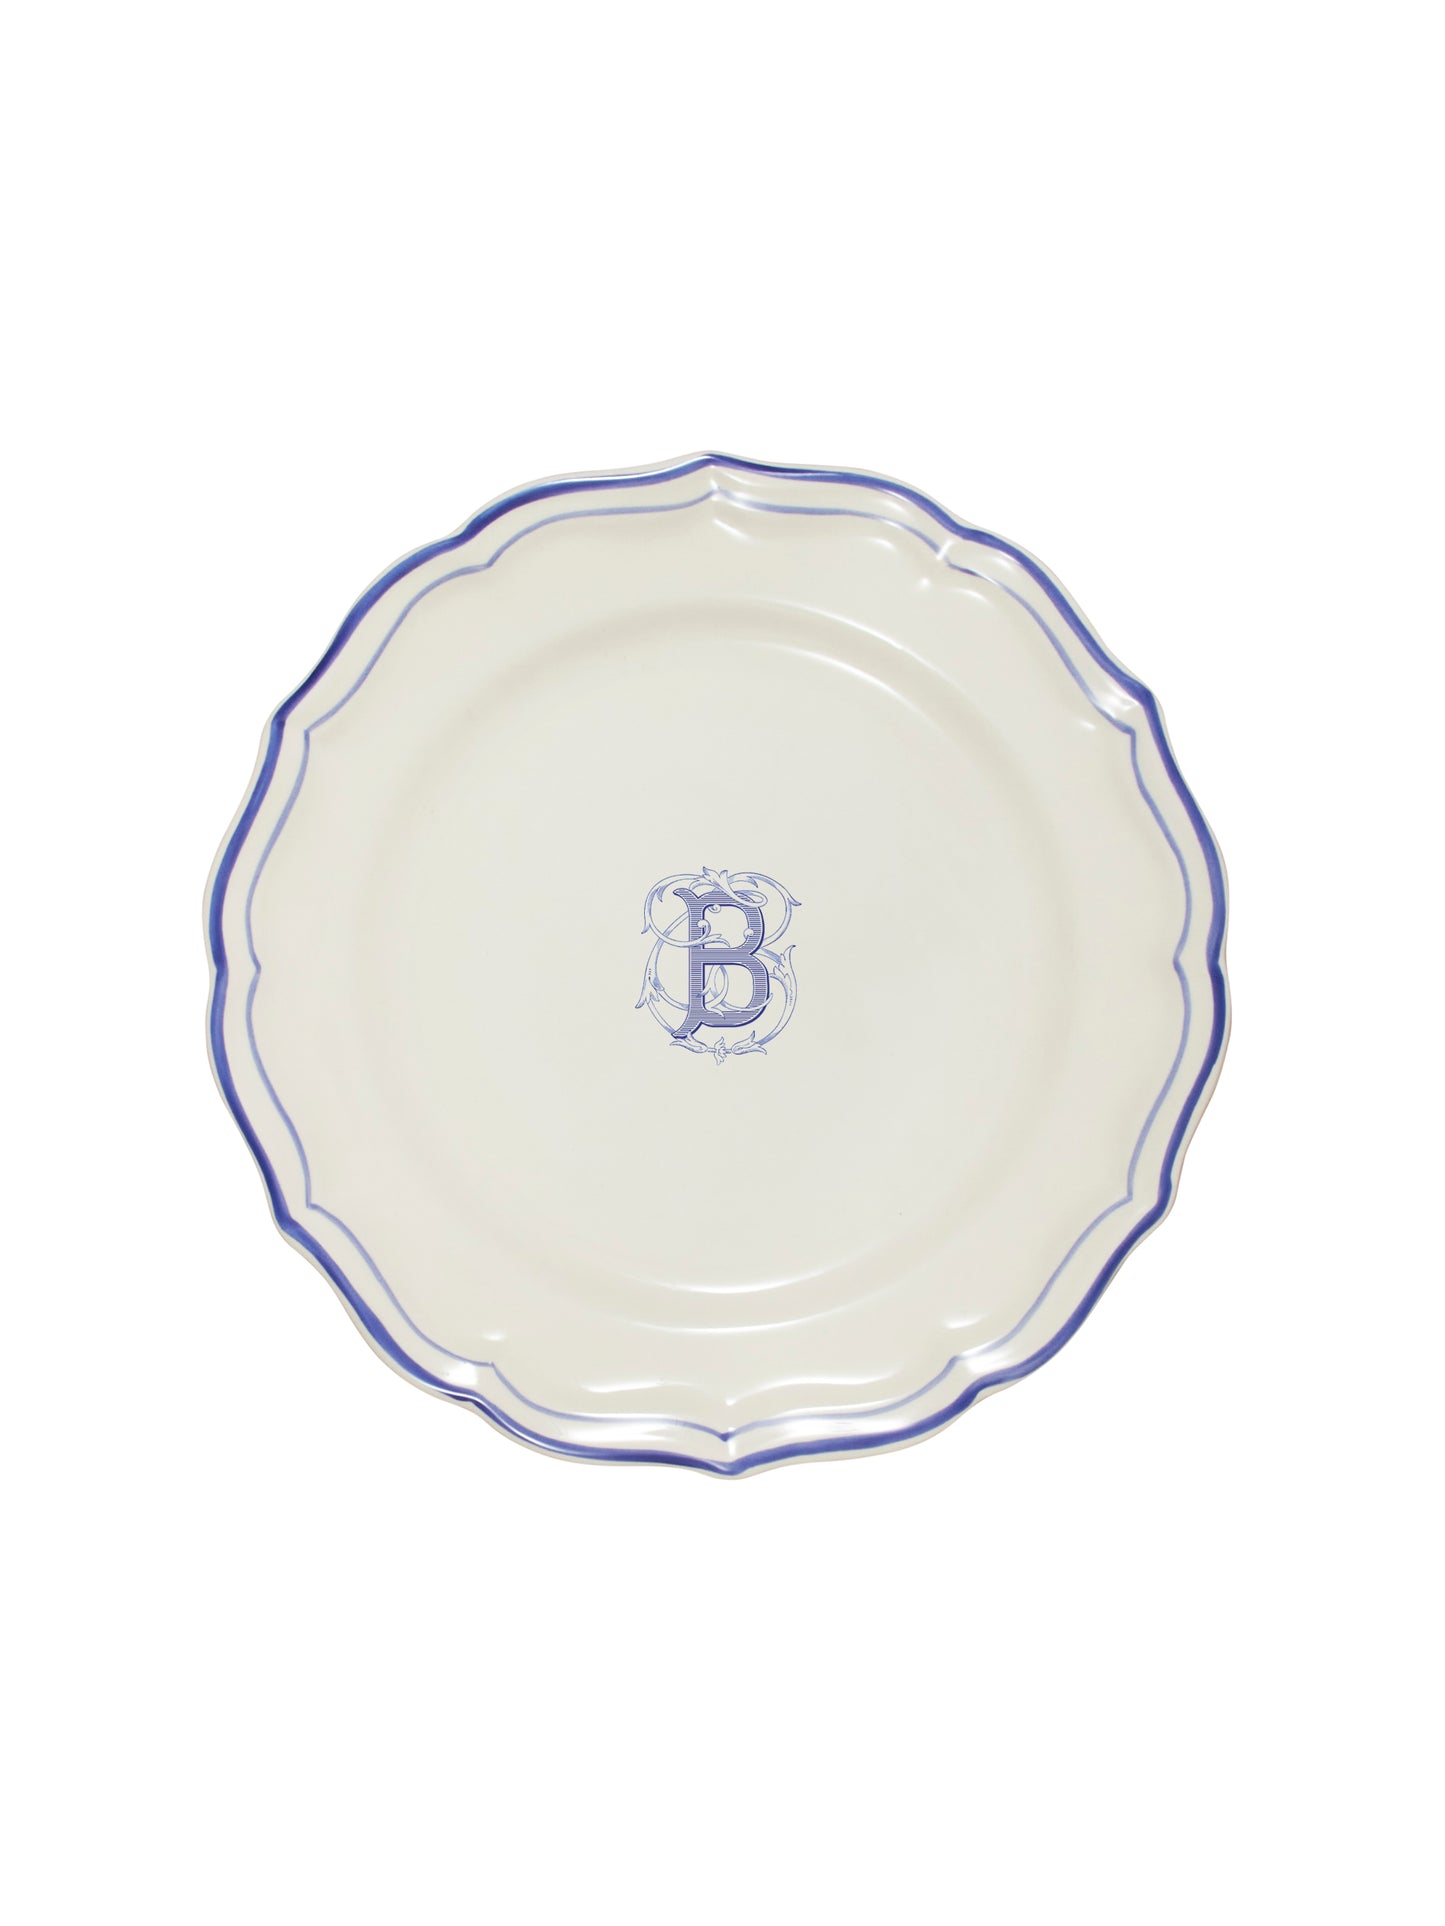 Gien Filet Bleu Dinner Plate B Weston Table